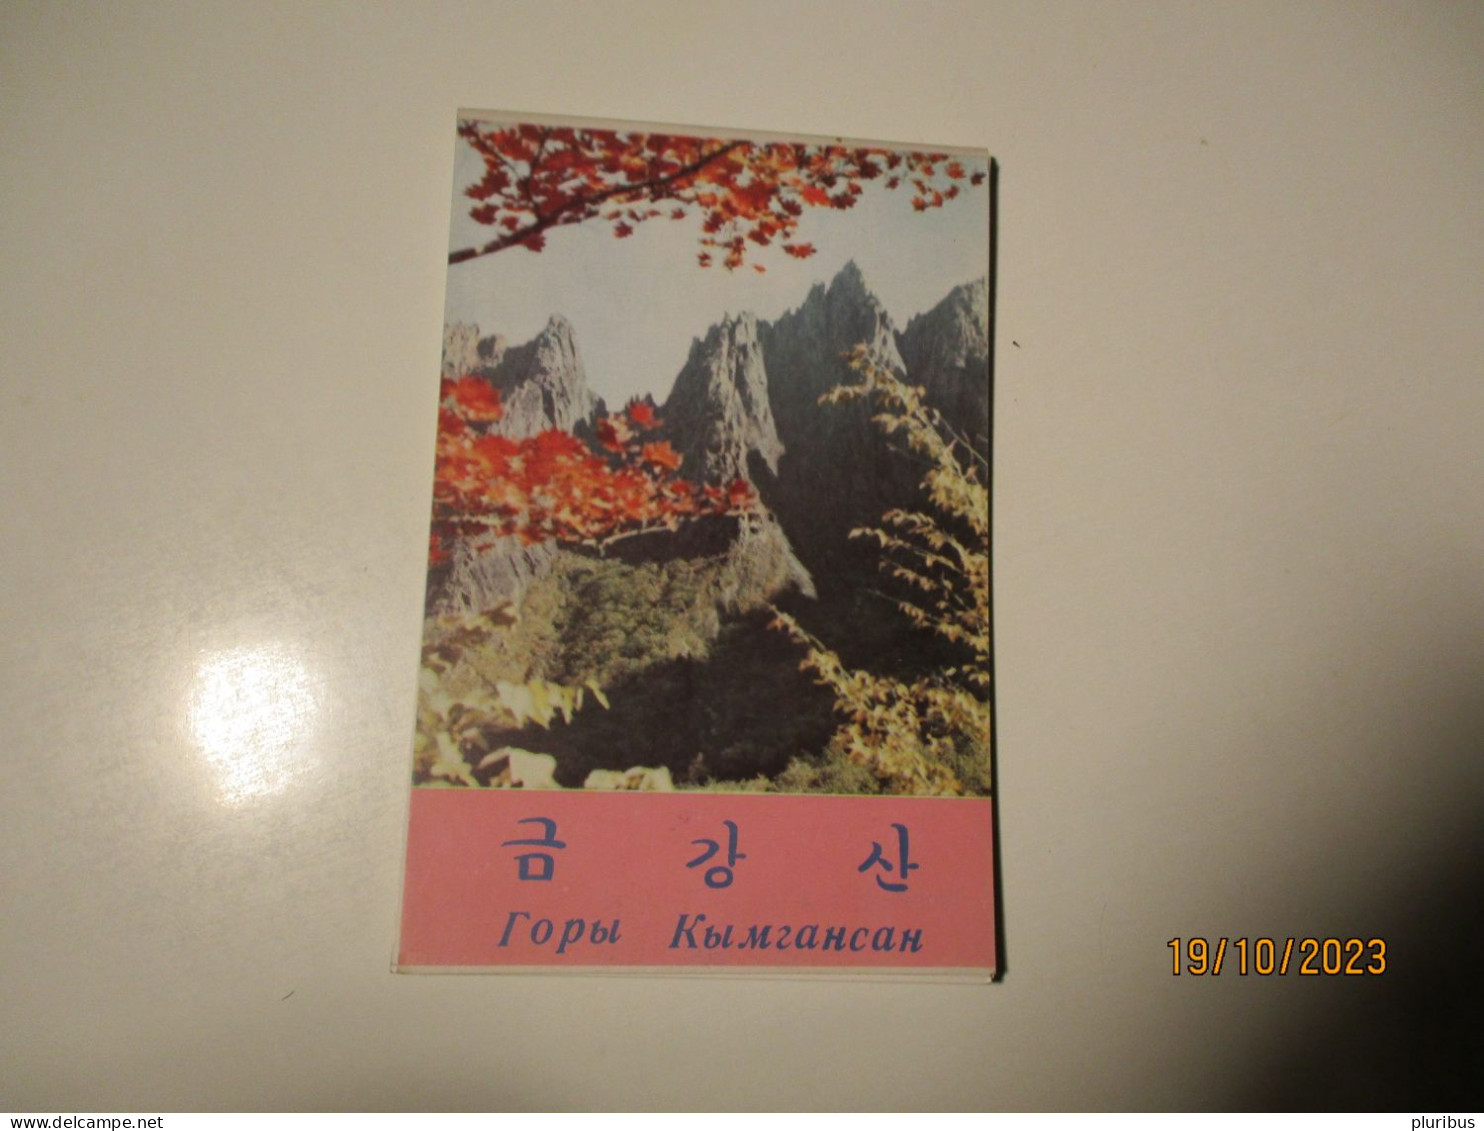 NORTH KOREA , SET OF 9 POSTCARDS KYMGANSAN KUMGANSAN KUMGAN MOUNTAINS 1969 - Corea Del Norte